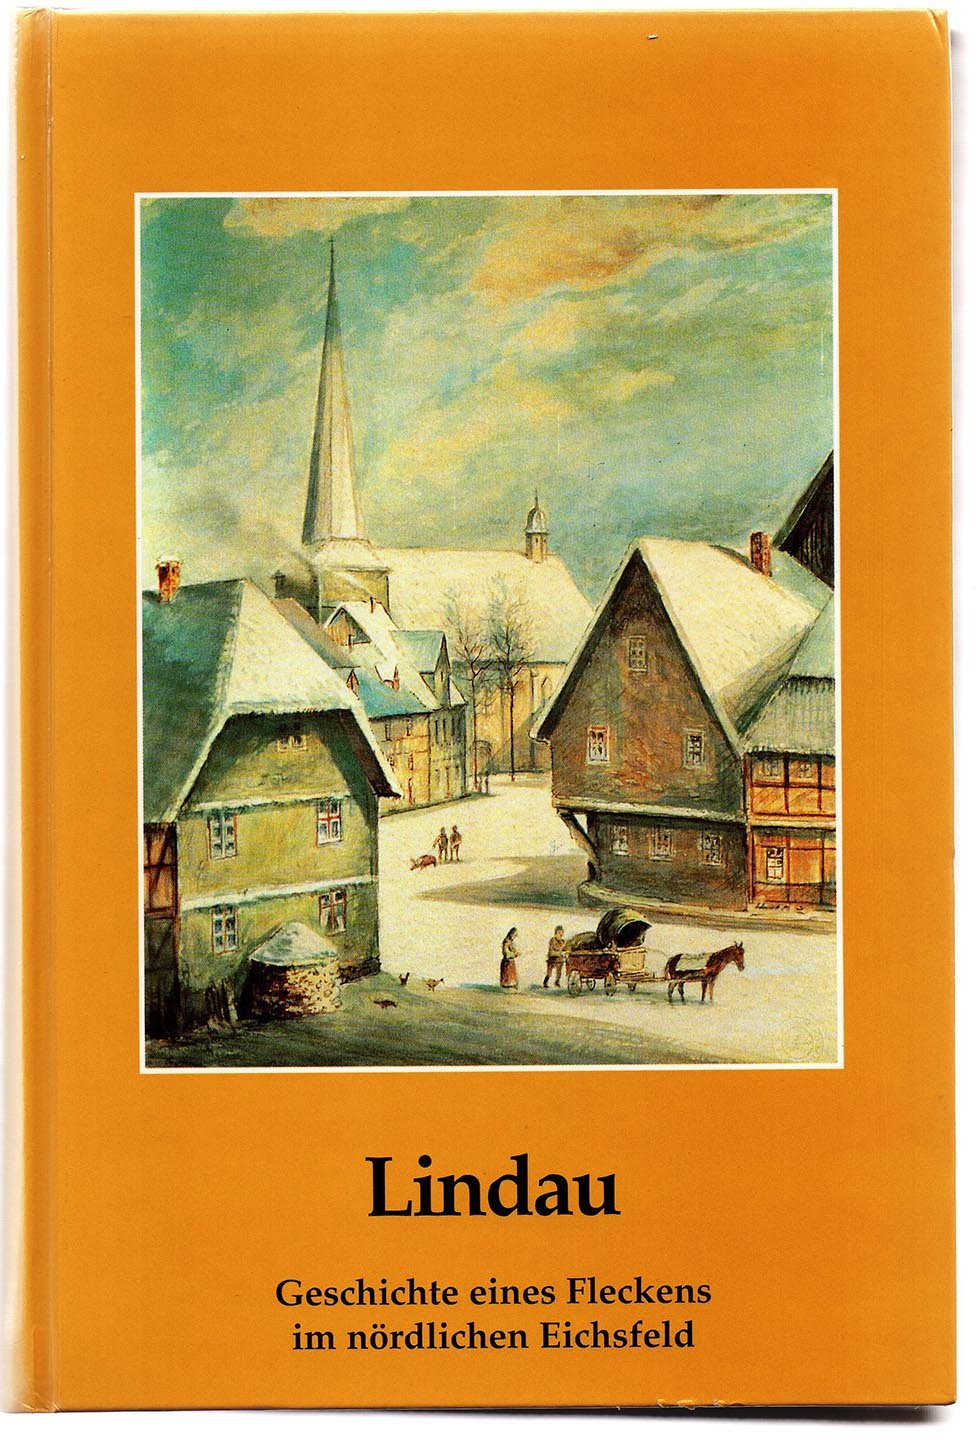 Lindau: Geschichte eines Fleckens im nördlichen Eichsfeld